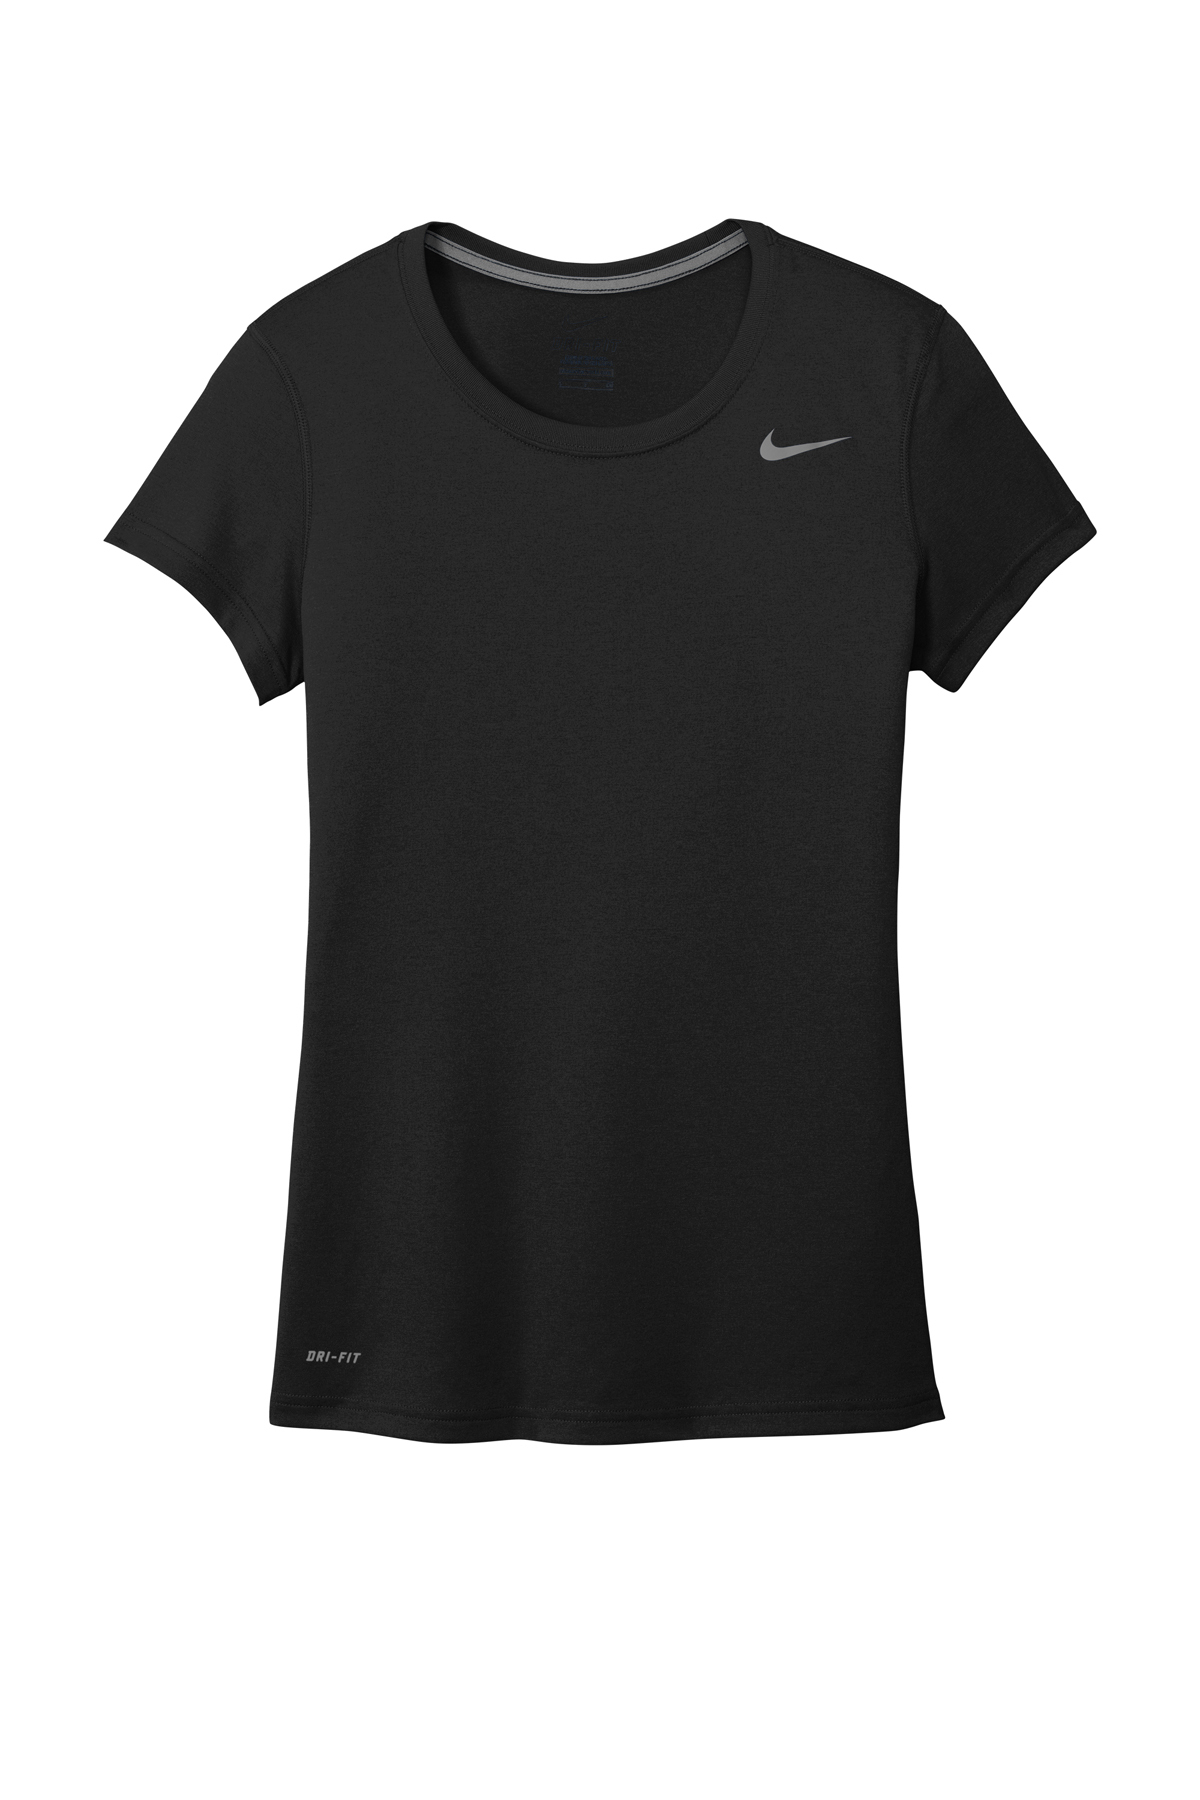 Nike Ladies Legend Tee | Product | SanMar